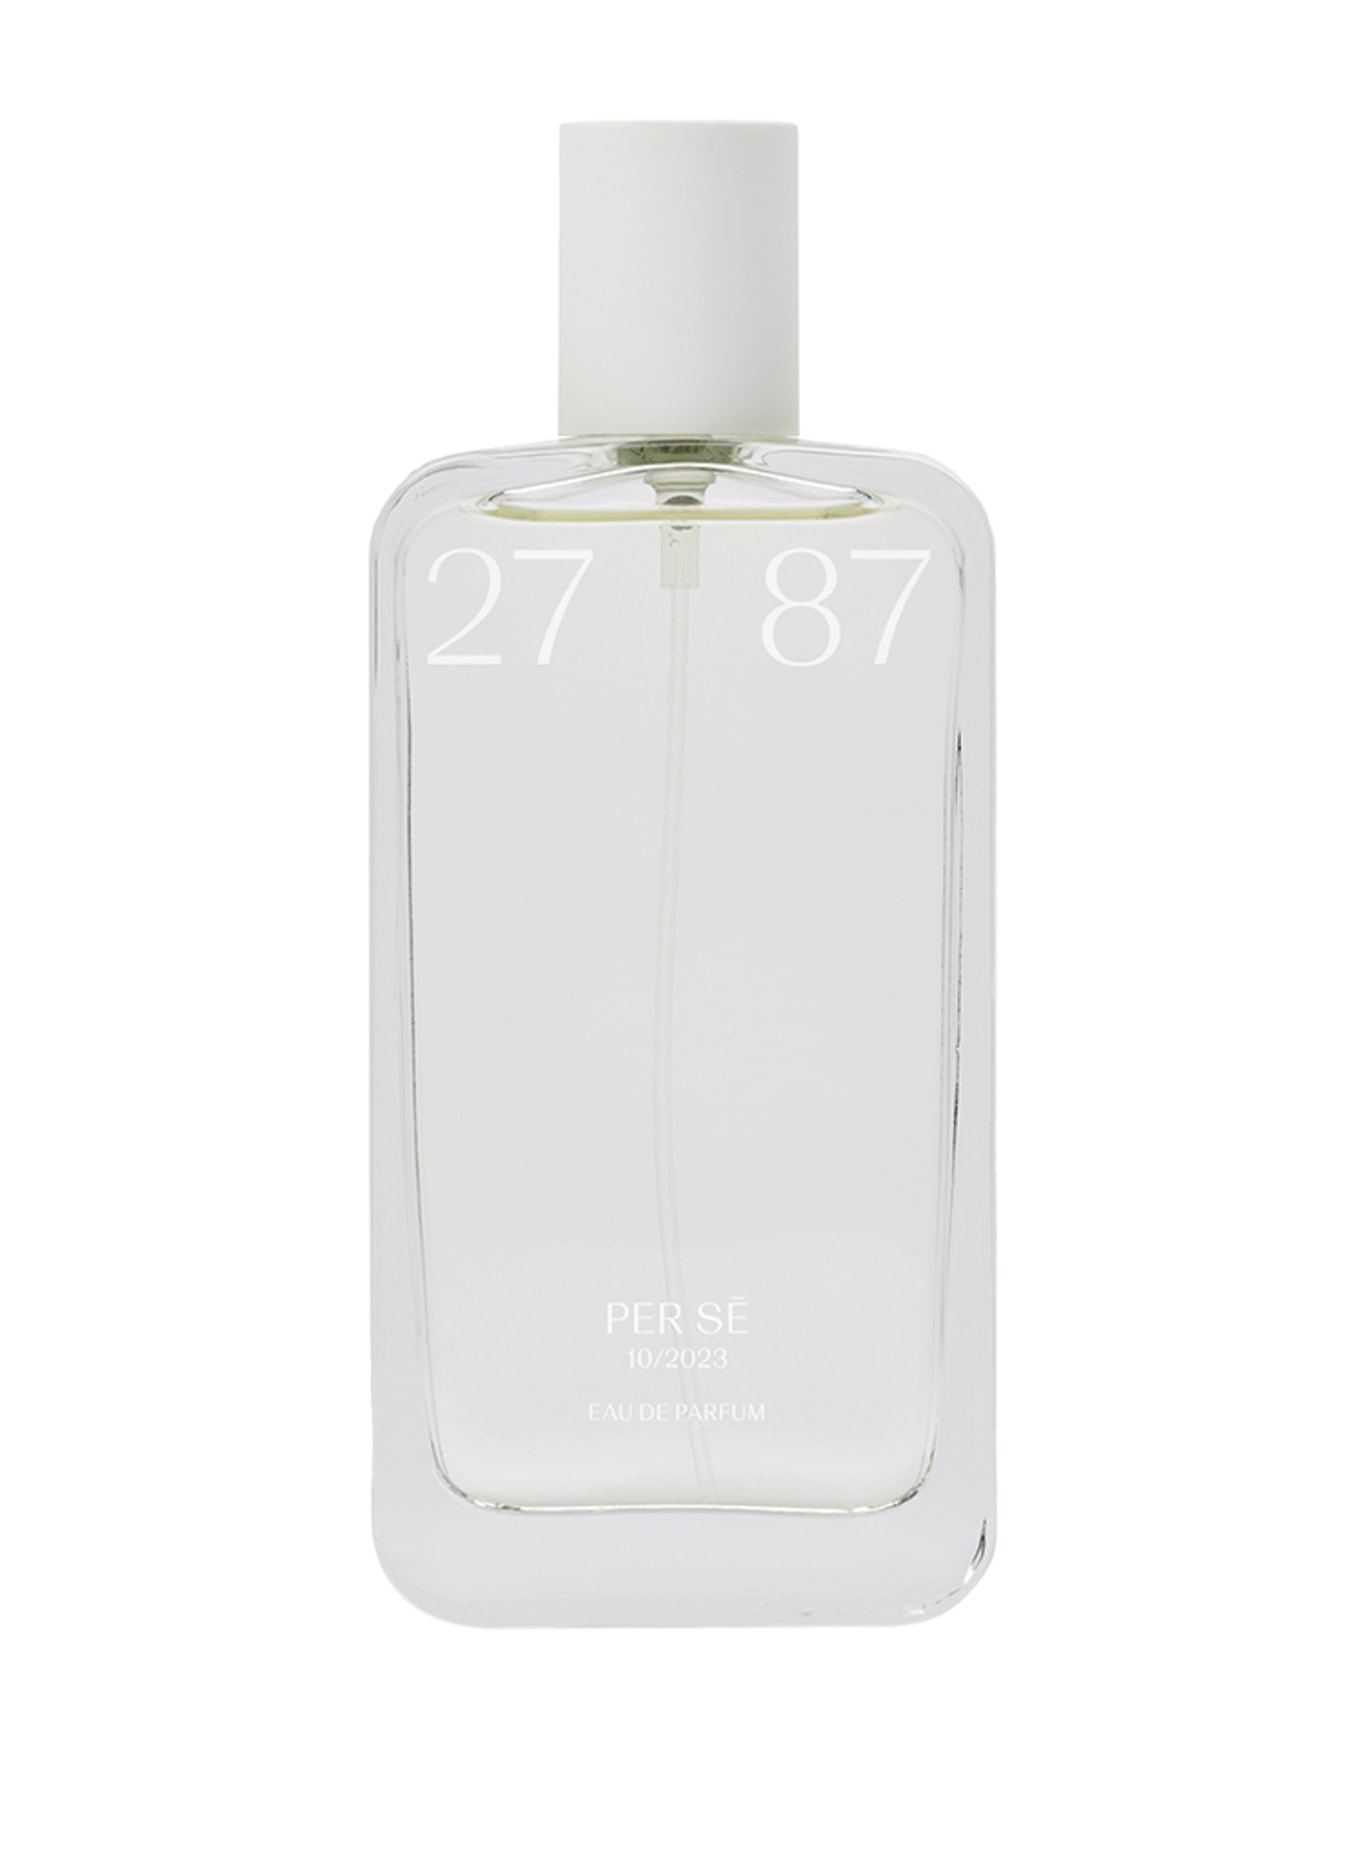 27 87 Perfumes PER SE (Bild 1)